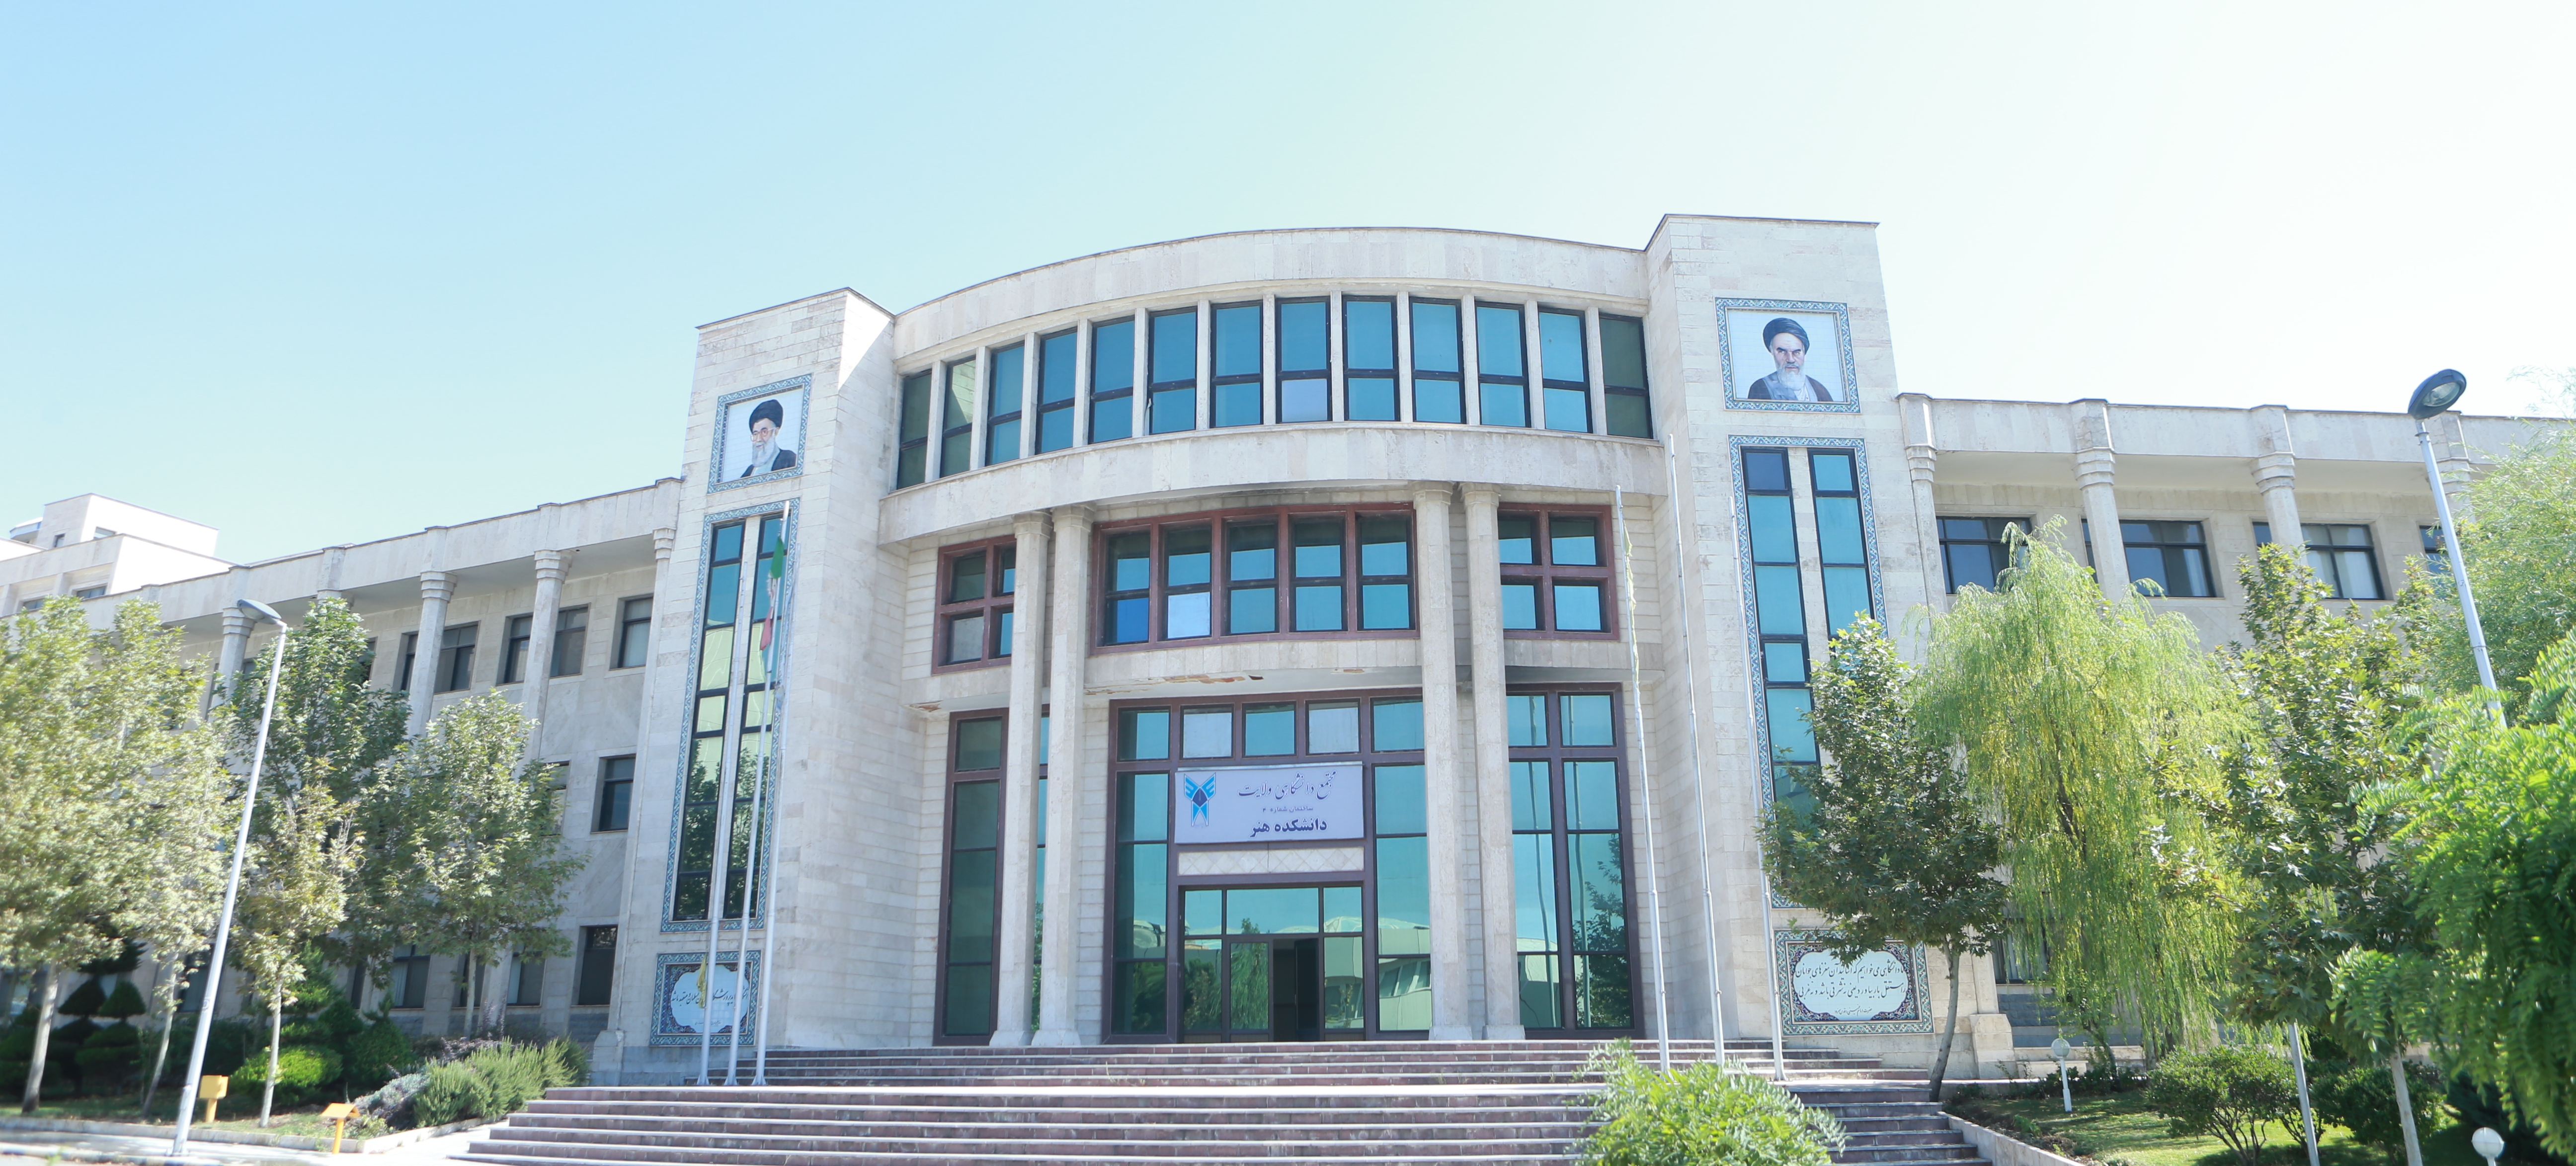 دانشگاه آزاد تهران مرکزی دانشکده روانشناسی
